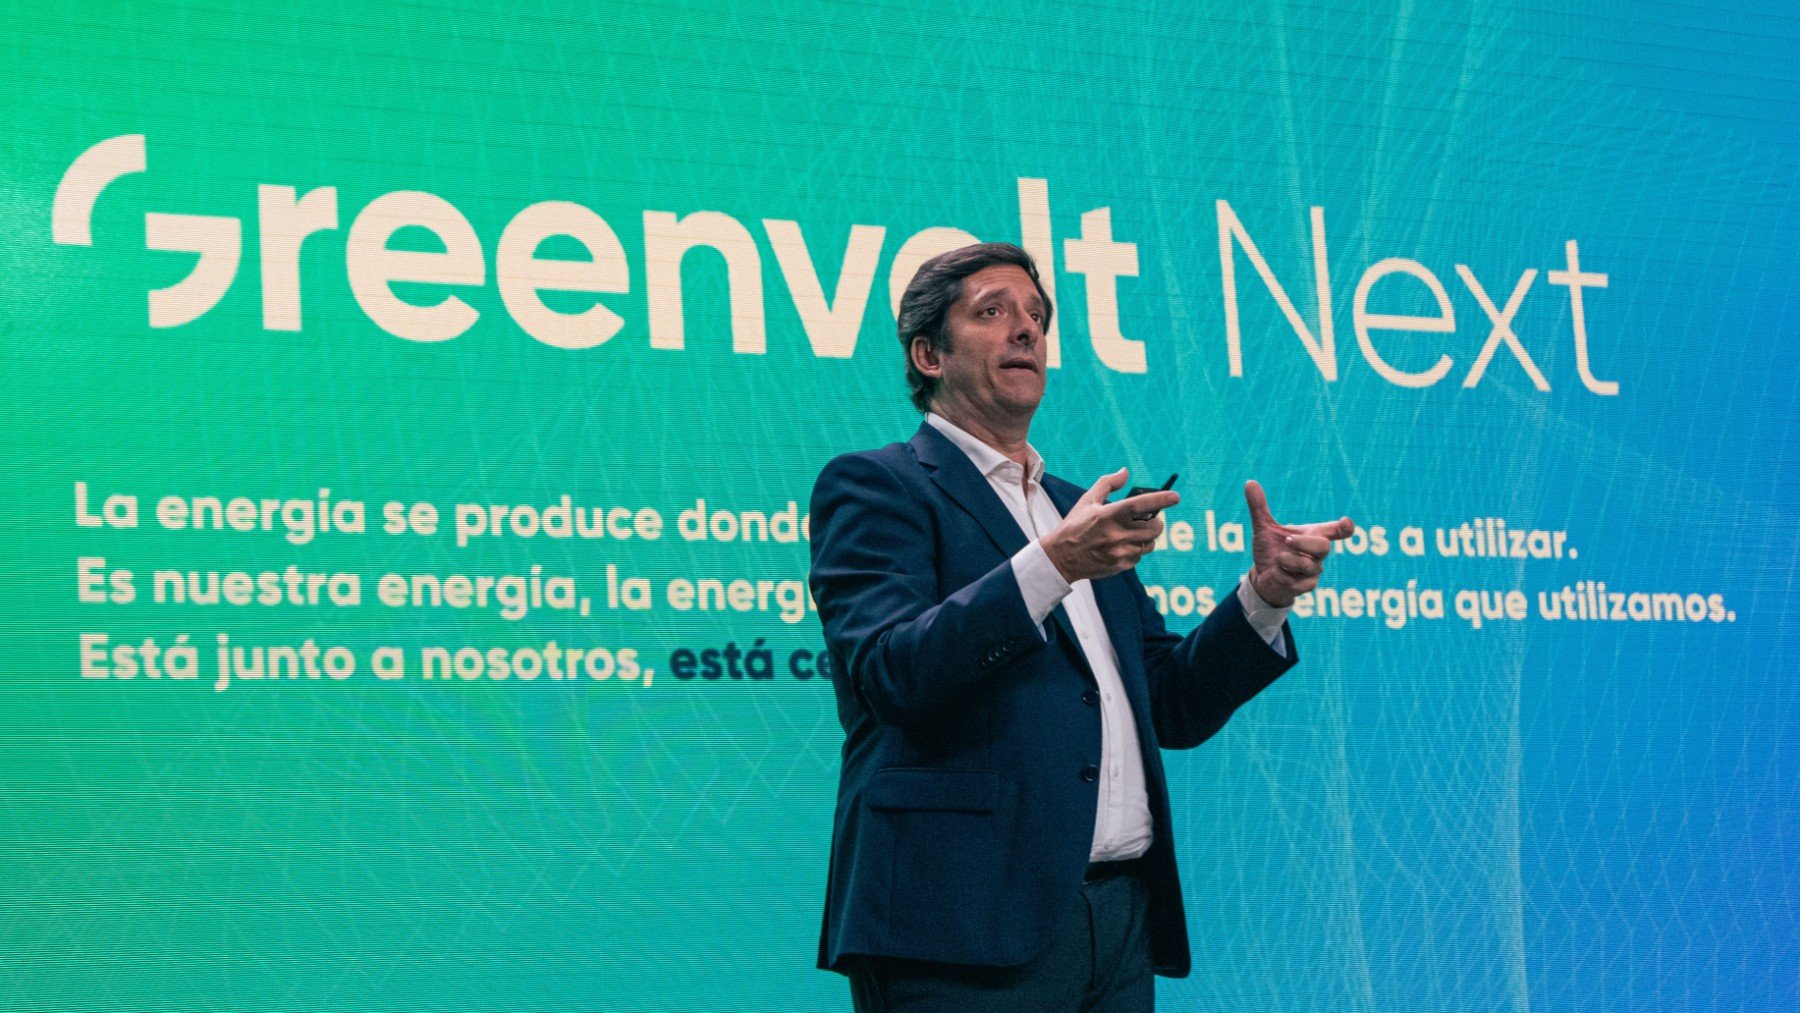 Remigio Abad, CEO Greenvolt Next España